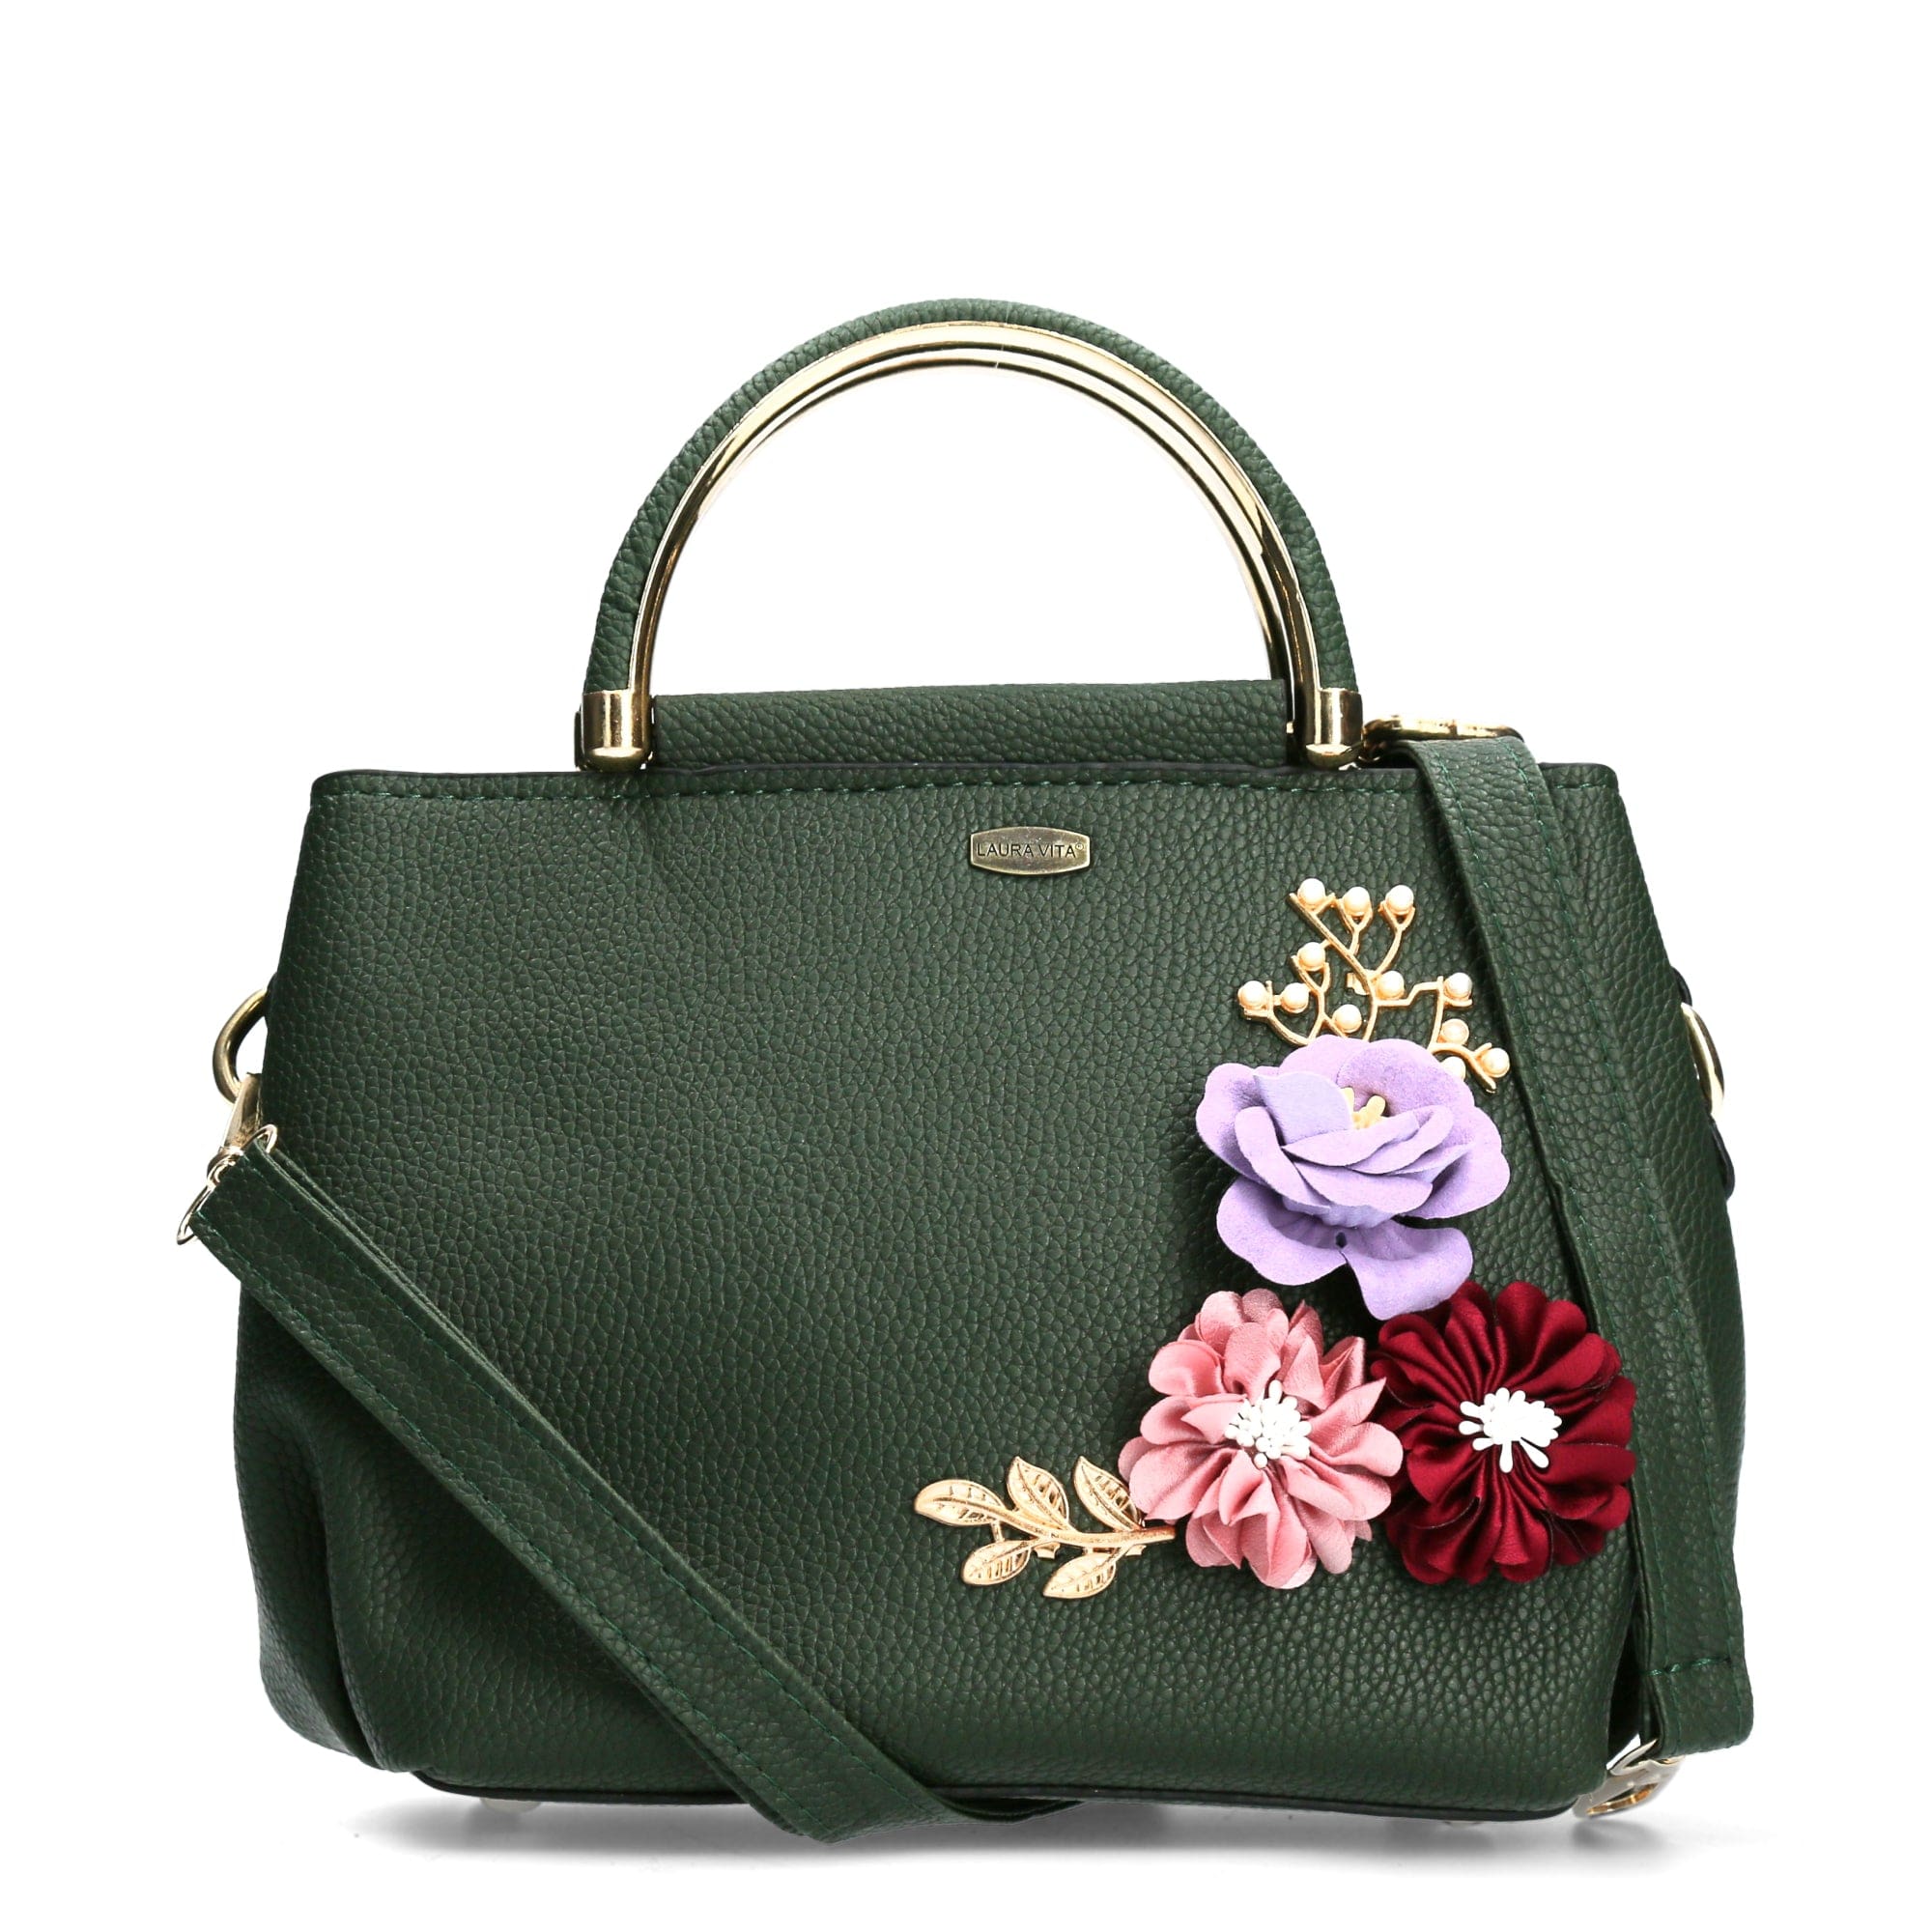 Delancey Bag - Green - Bag